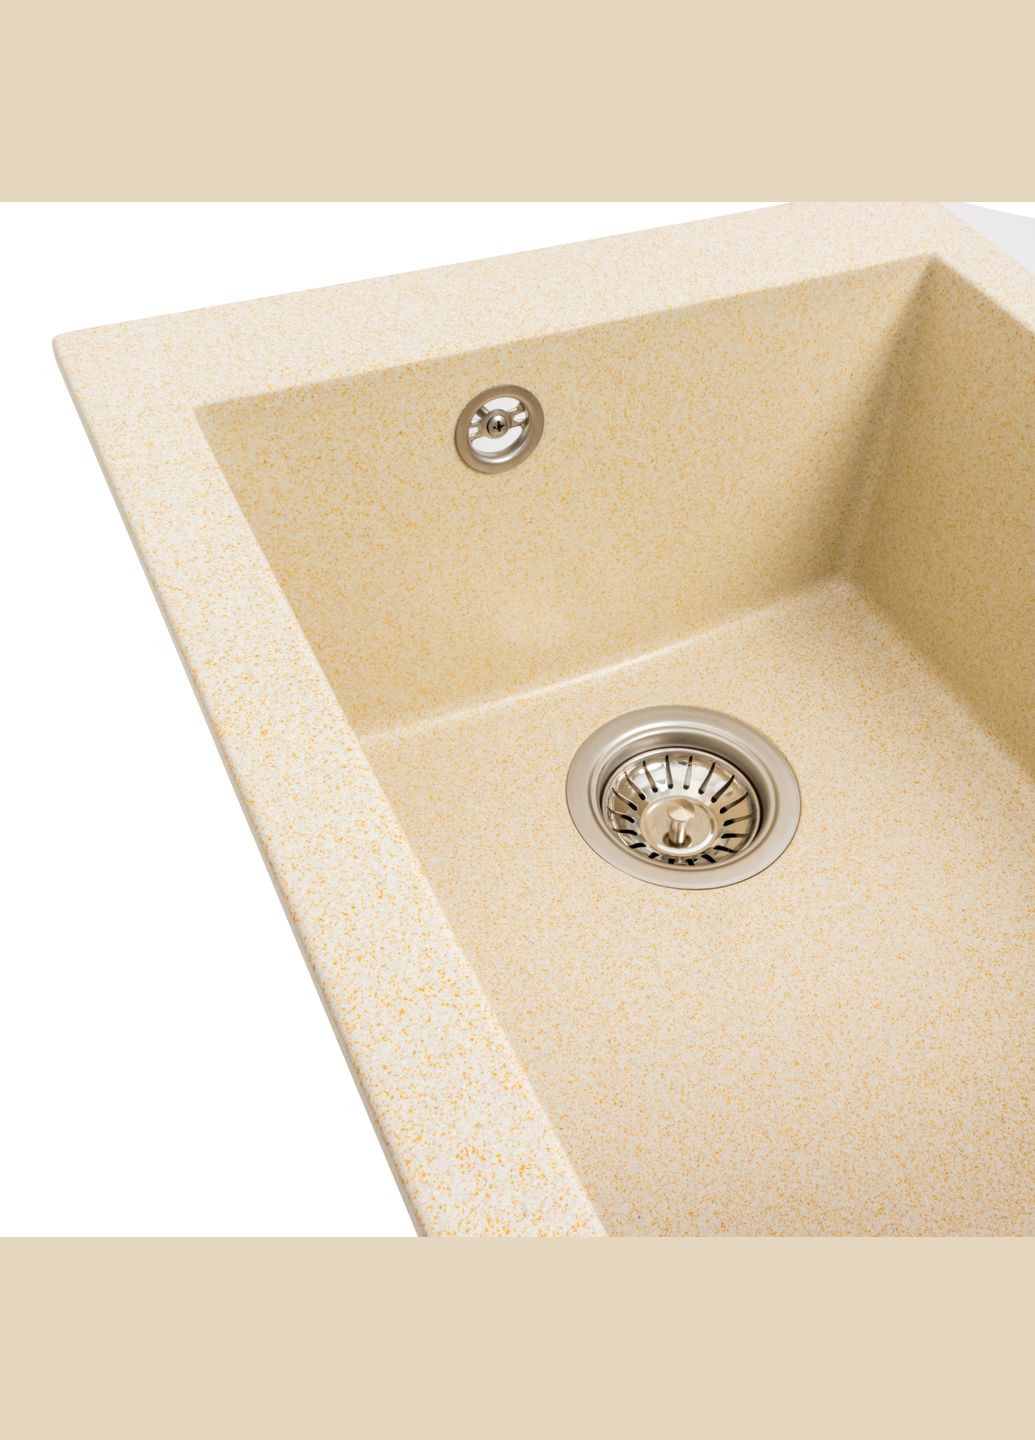 Гранітна мийка для кухні 4150 SOKIL матова (пісок) Platinum (269793995)